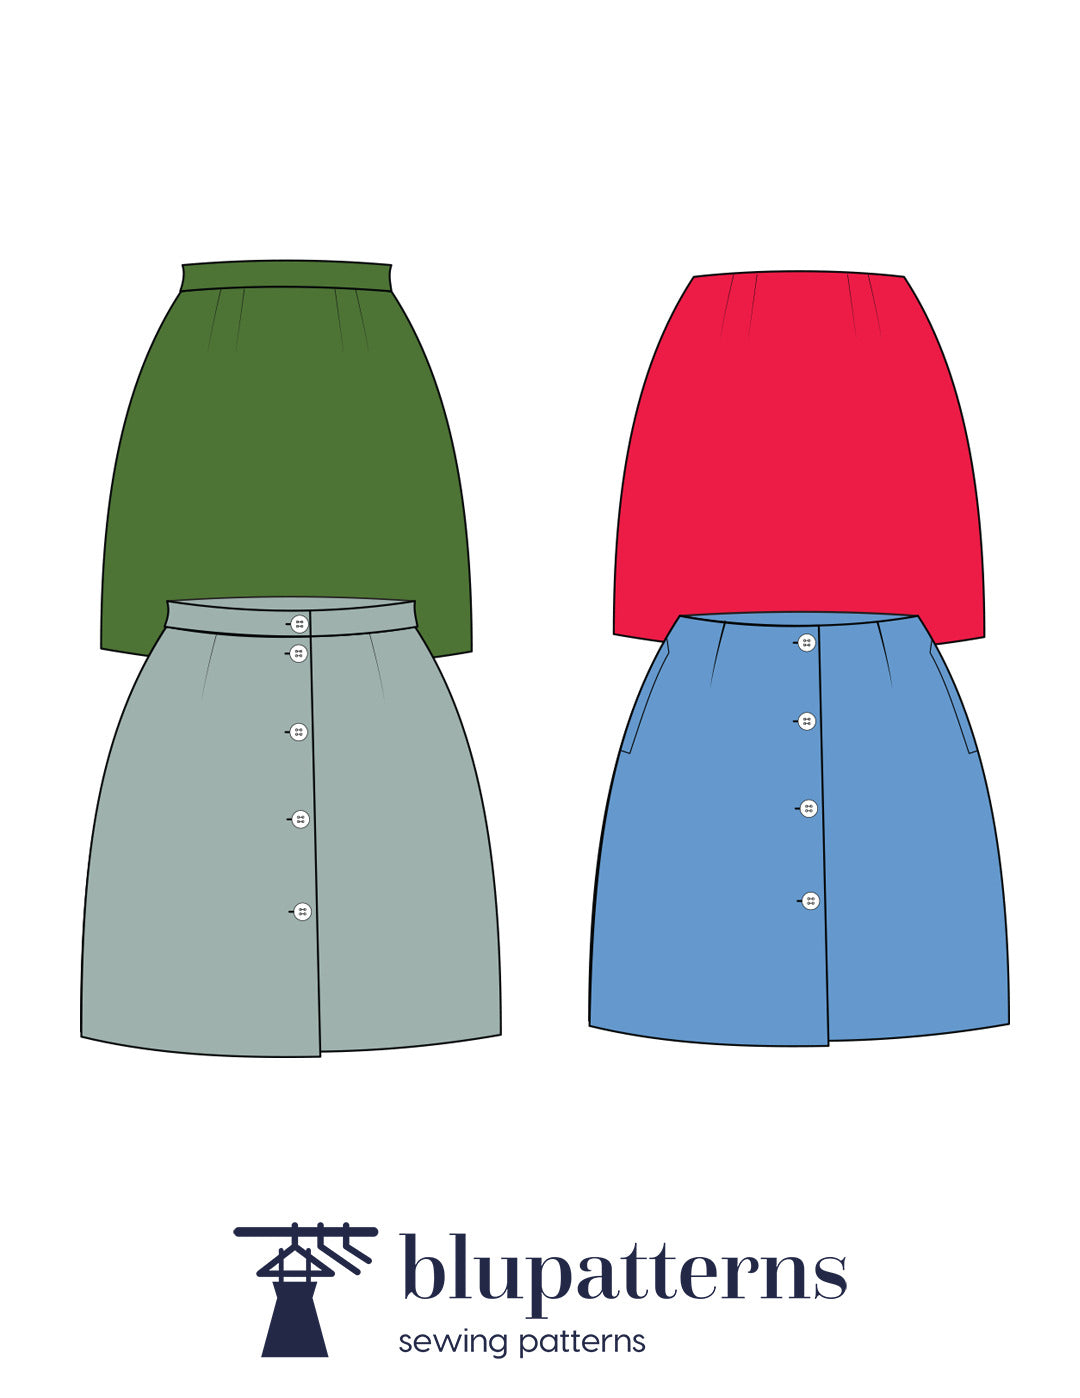 Ensley Skirt Pattern